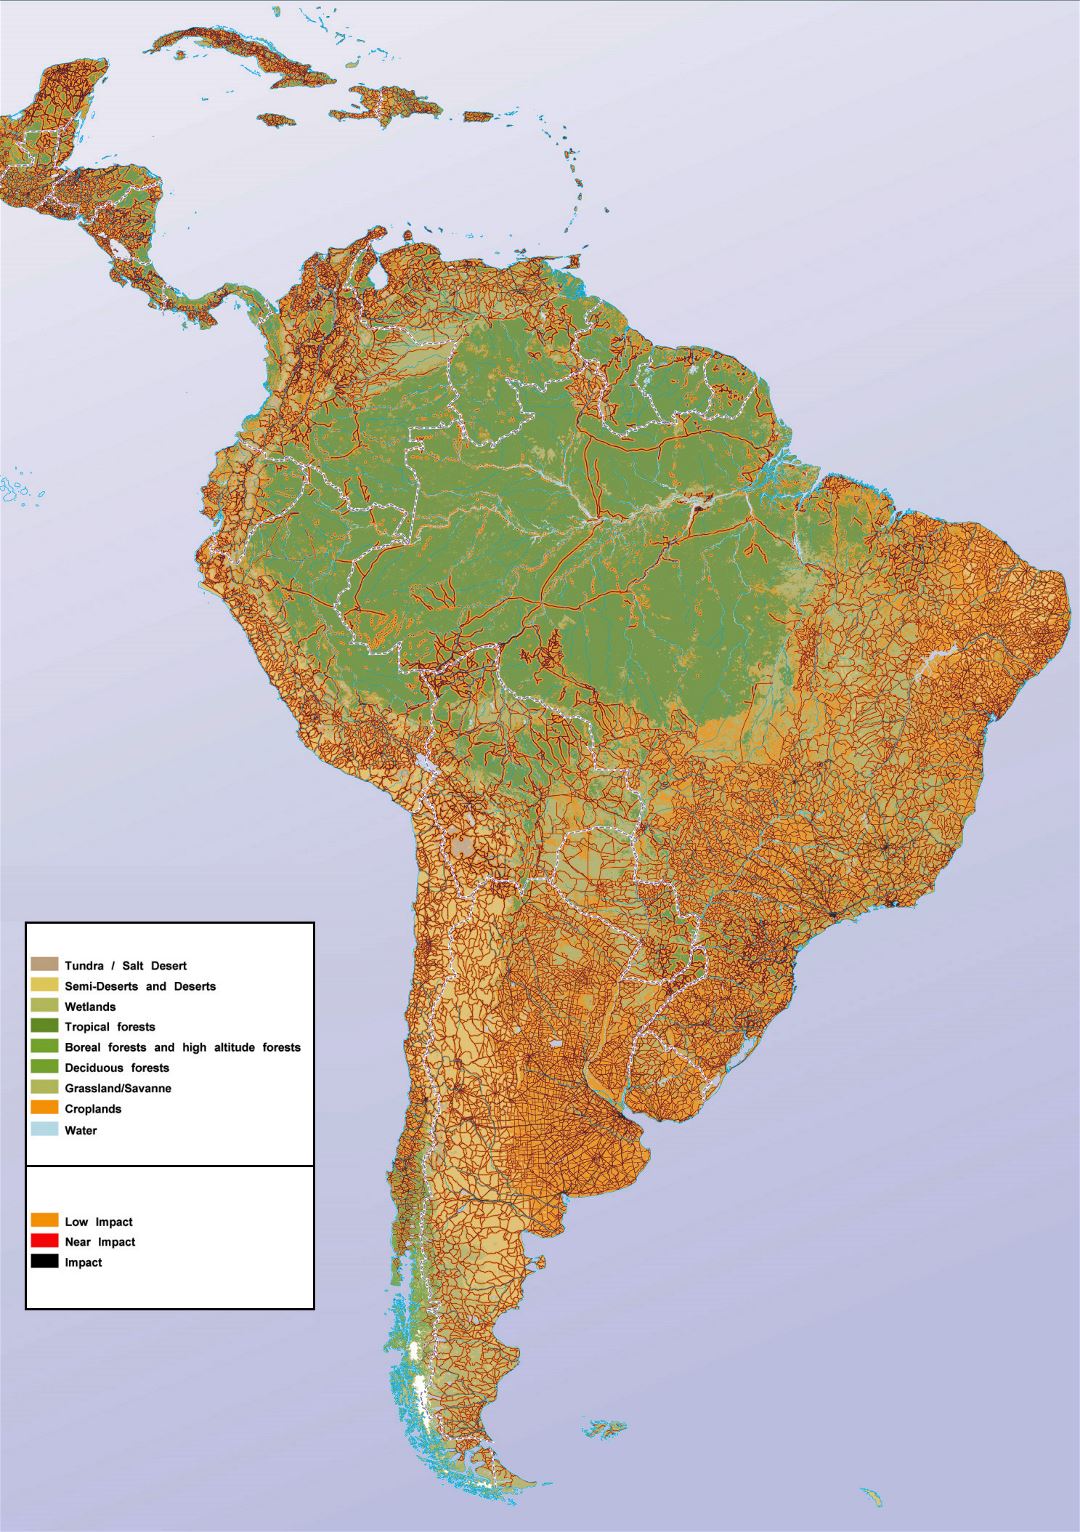 Большая карта Южной Америки с отображением влияния человека